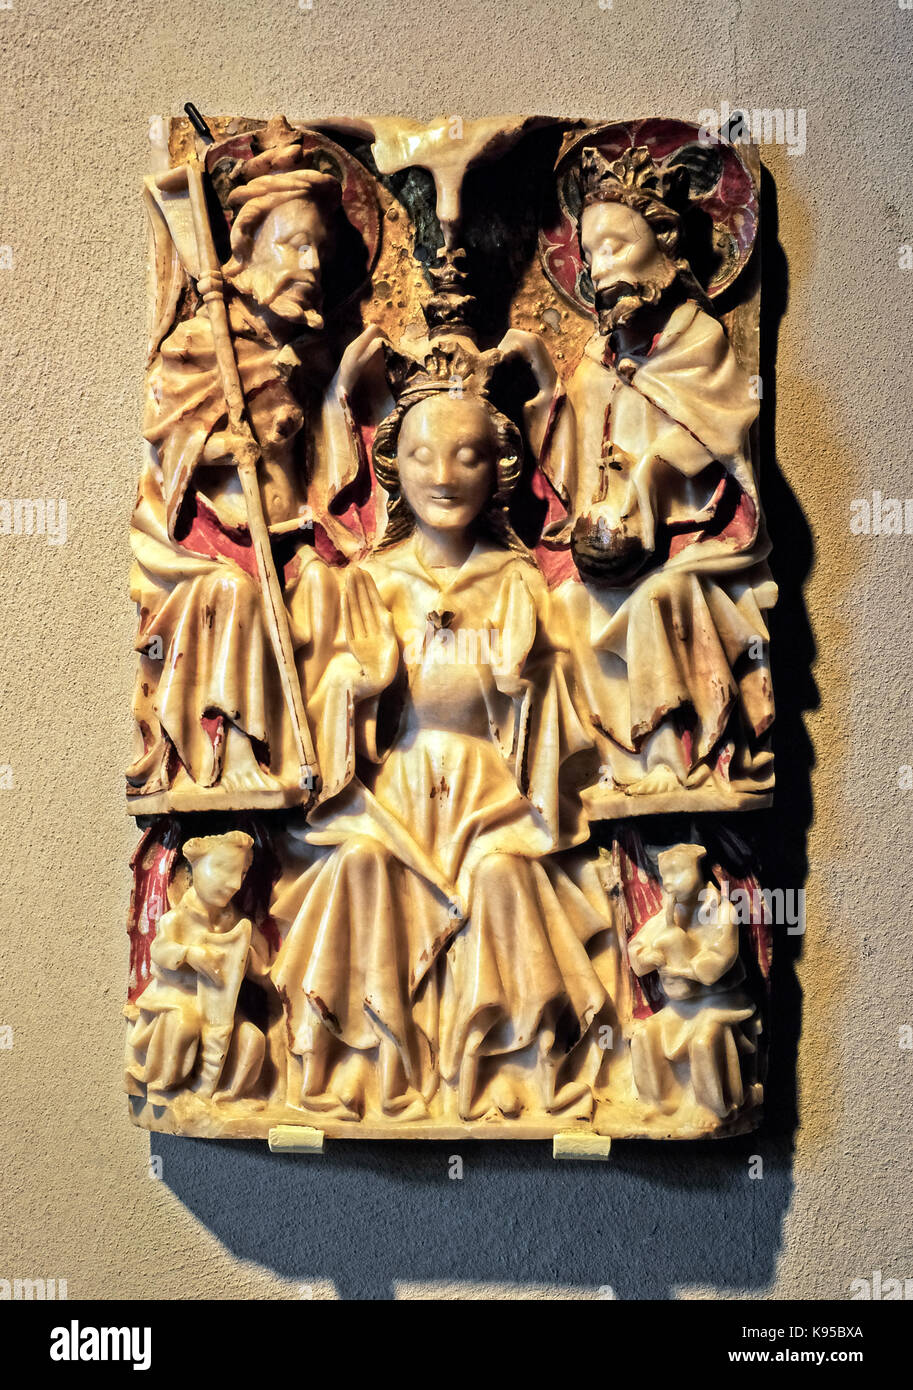 L'art sacré médiéval italie - fragment d'Ancône avec le couronnement de la vierge de la deuxième moitié du 15ème siècle - peint d'albâtre Banque D'Images